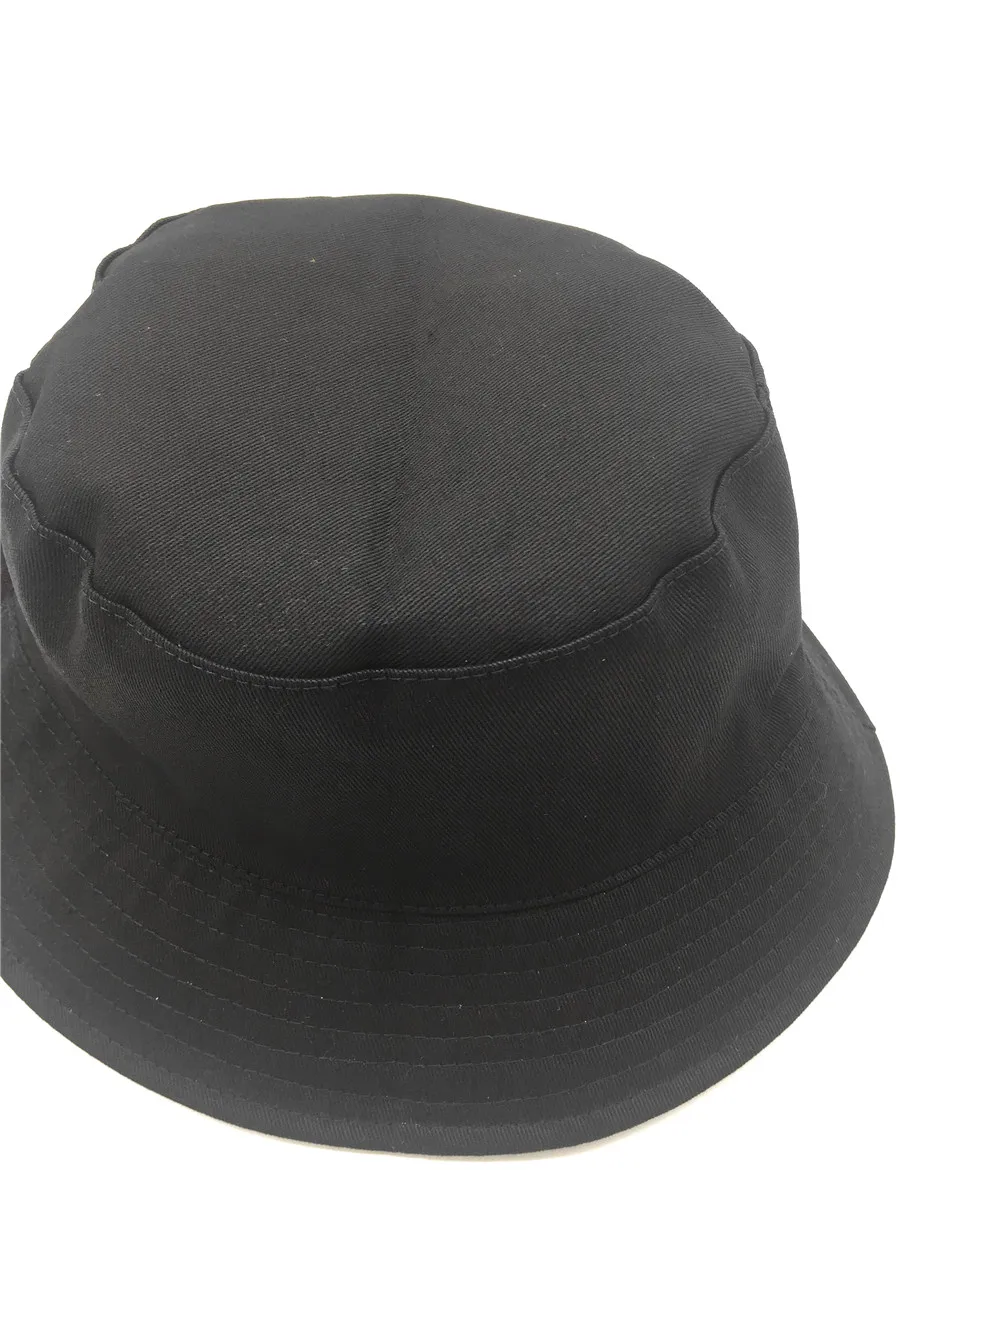 Женская однотонная Серебристая шляпа-ведро из искусственной кожи с металлическим покрытием, двусторонняя женская шляпа из искусственной кожи и хлопка, рыбацкая шляпа, женские шляпы для защиты от солнца